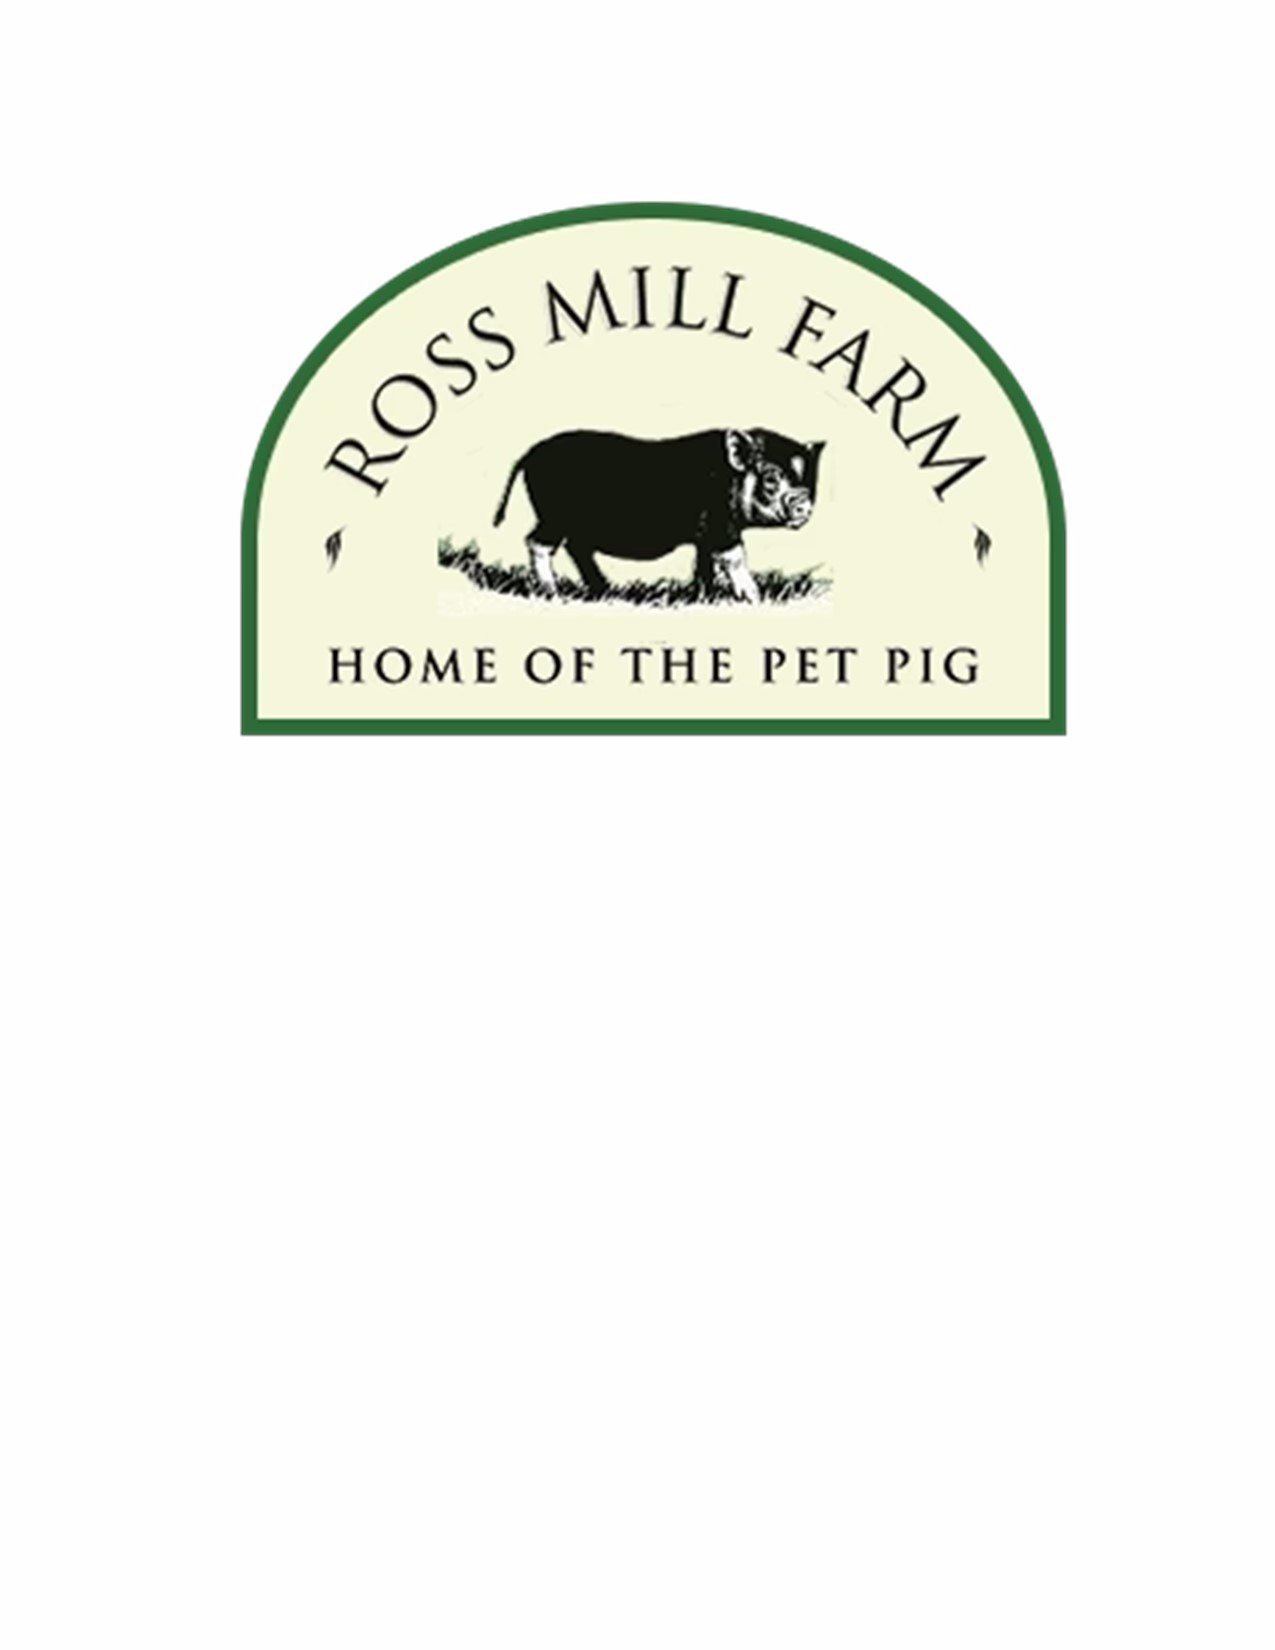 Ross Mill Farm logo